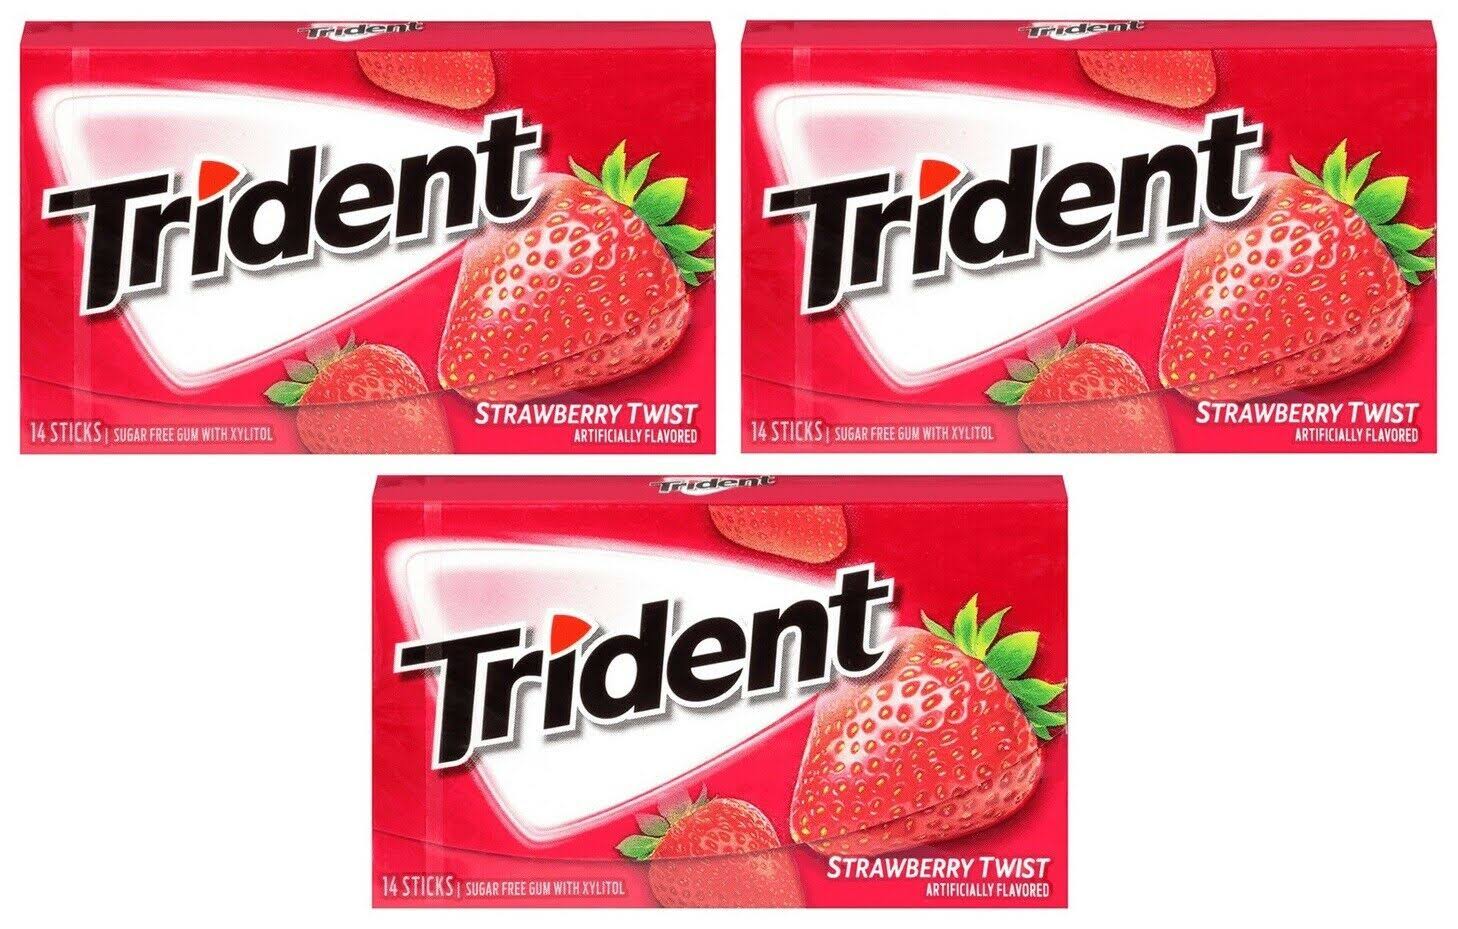 Trident Strawberry Twist Gum